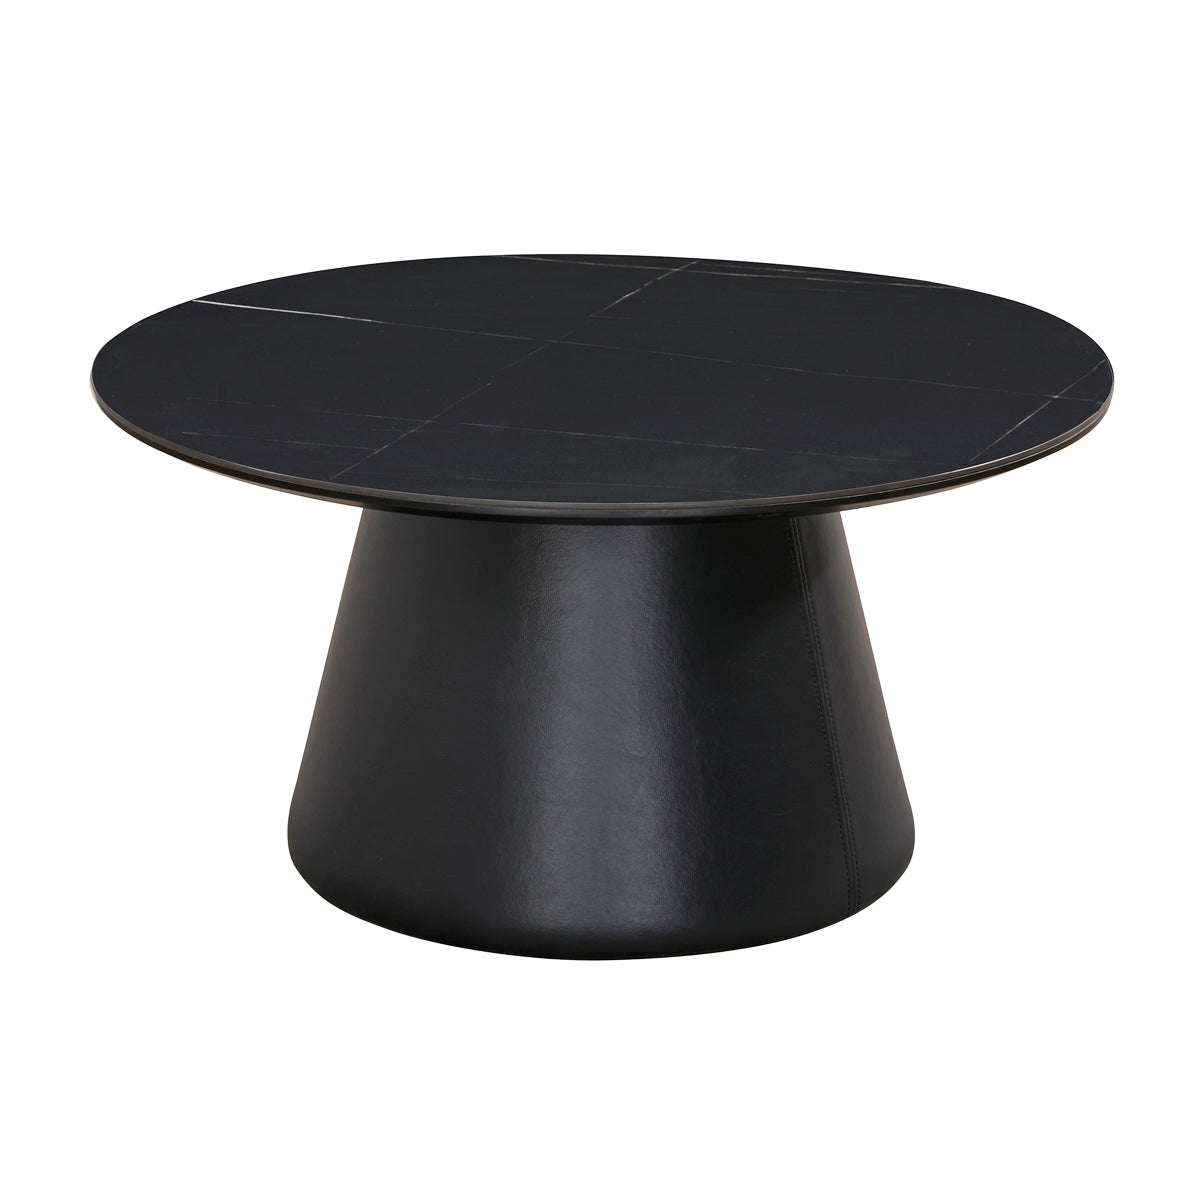 Table basse ronde de diamètre 80 cm en finition imitation marbre noir stratifié - MANDY